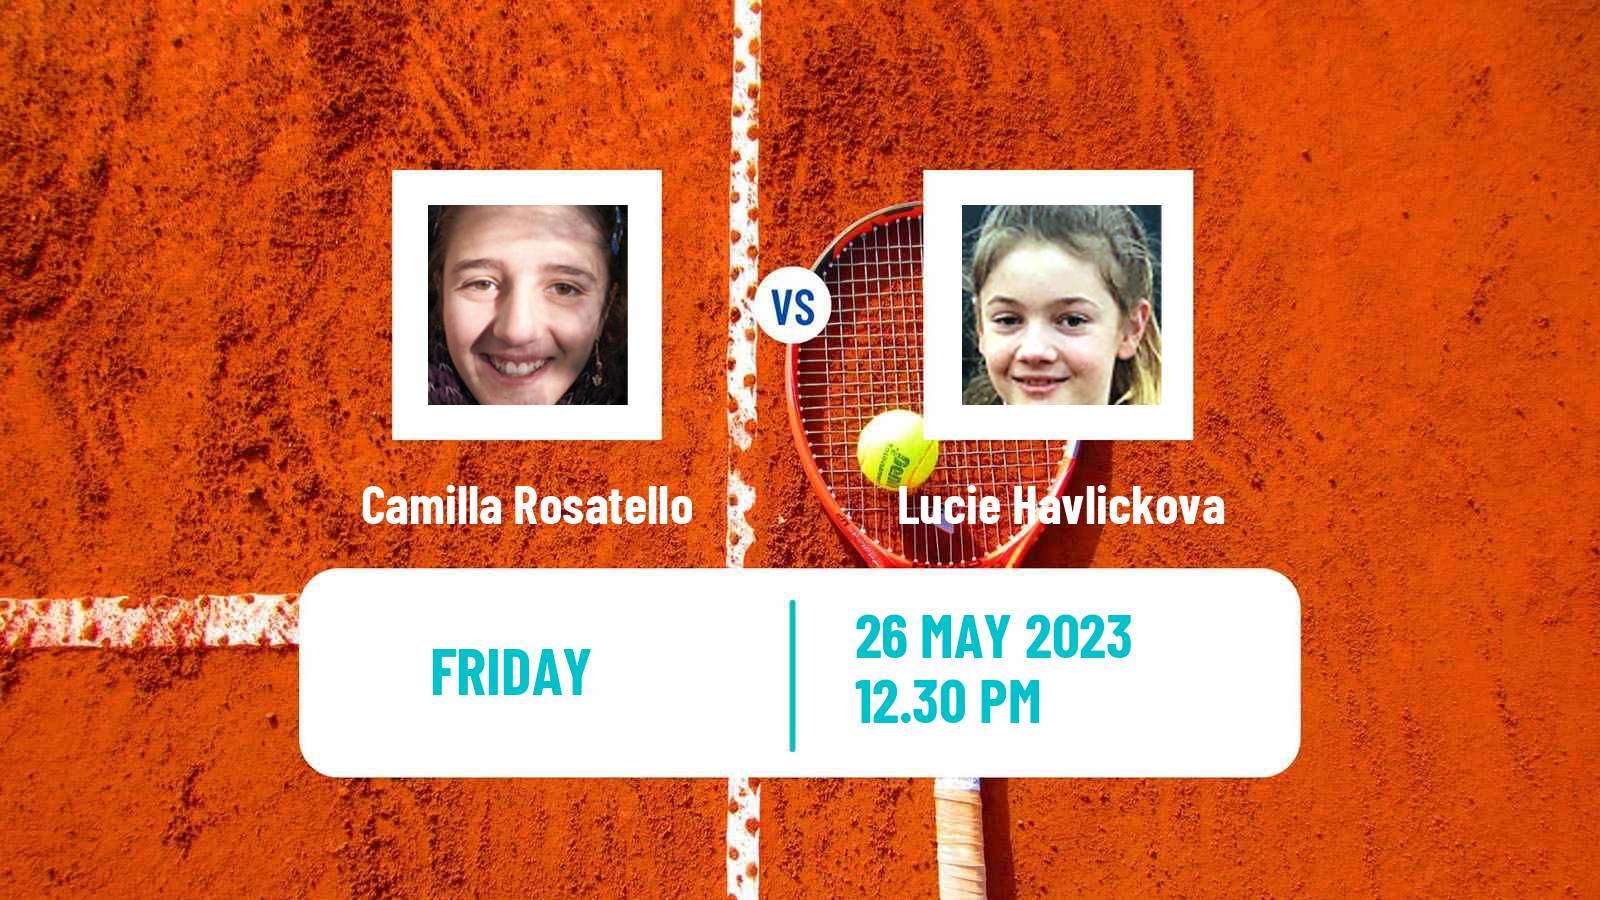 Tennis ITF W60 Grado Women Camilla Rosatello - Lucie Havlickova